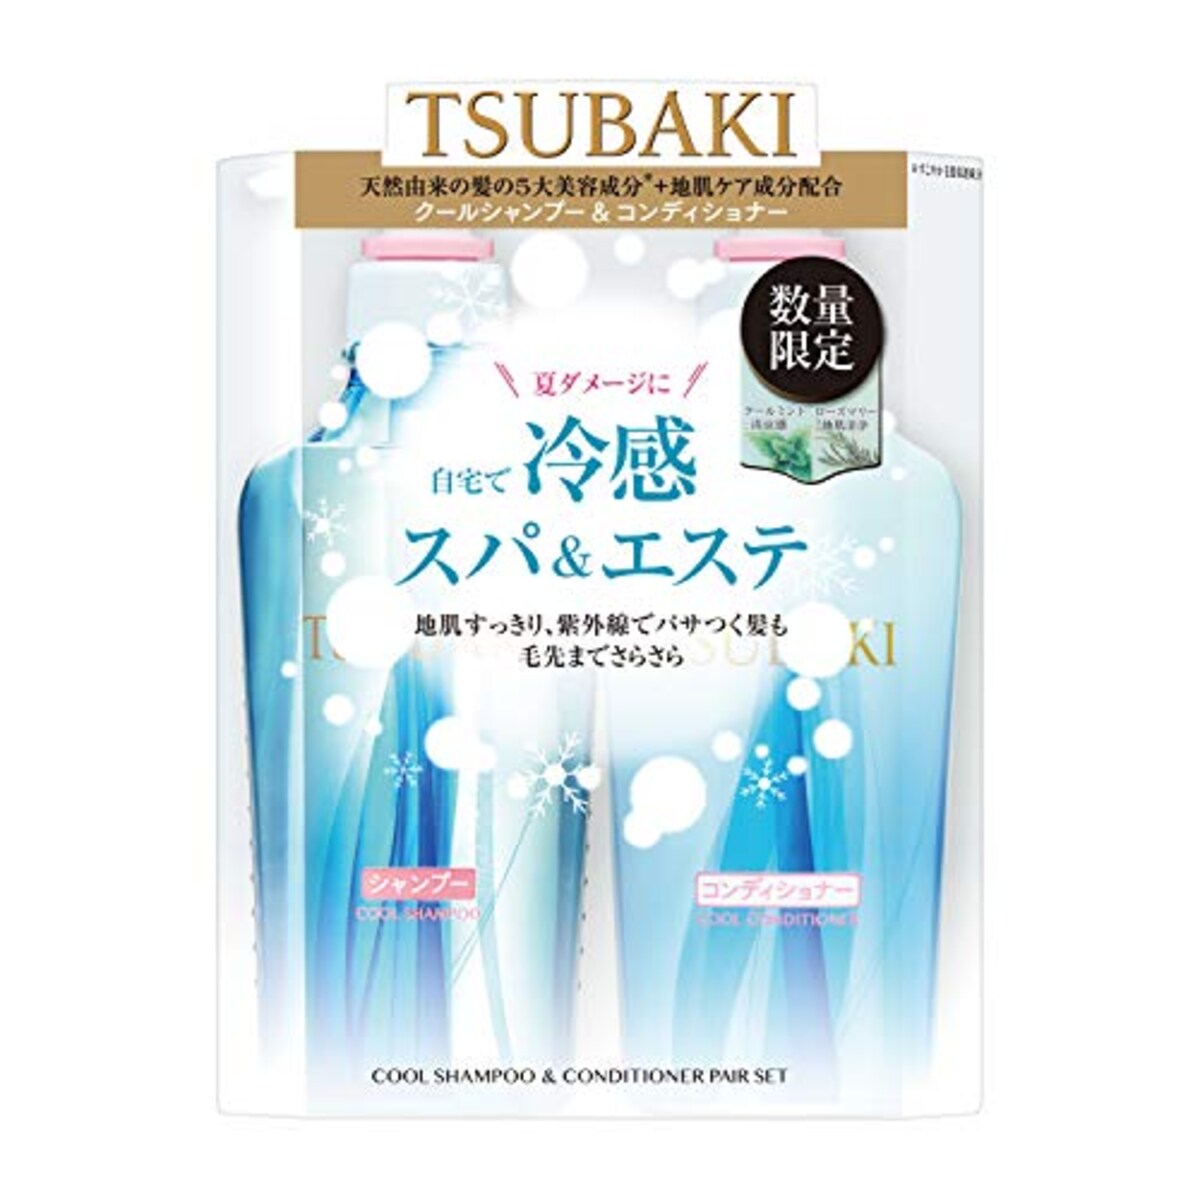 tsubaki（ツバキ） クールポンプペア (シャンプー&コンディショナー) リキッド・液体 みずみずしく爽やかな香り